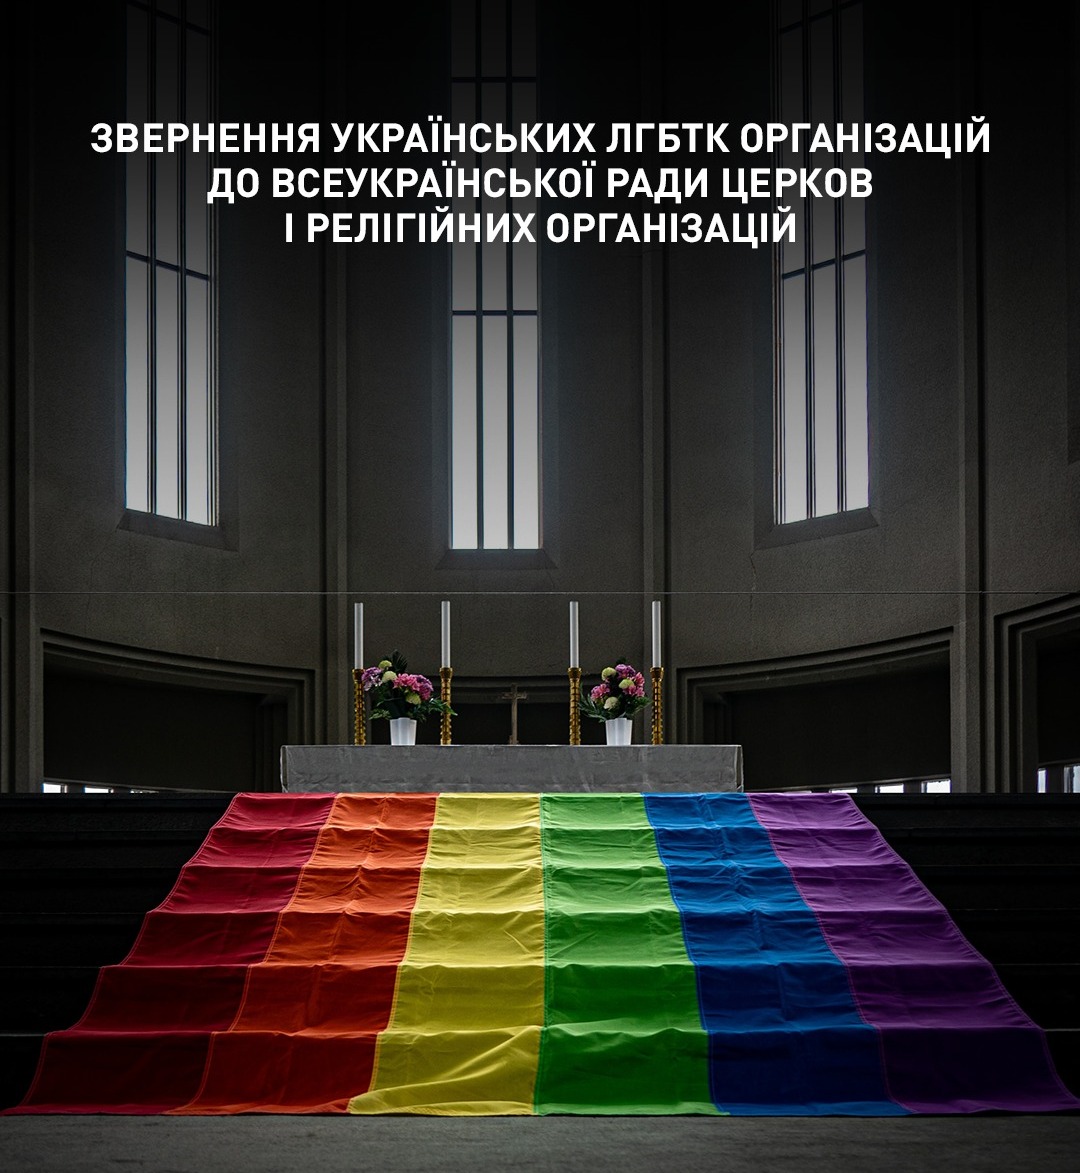 Звернення українських ЛГБТК організацій до Всеукраїнської Ради Церков і релігійних організацій